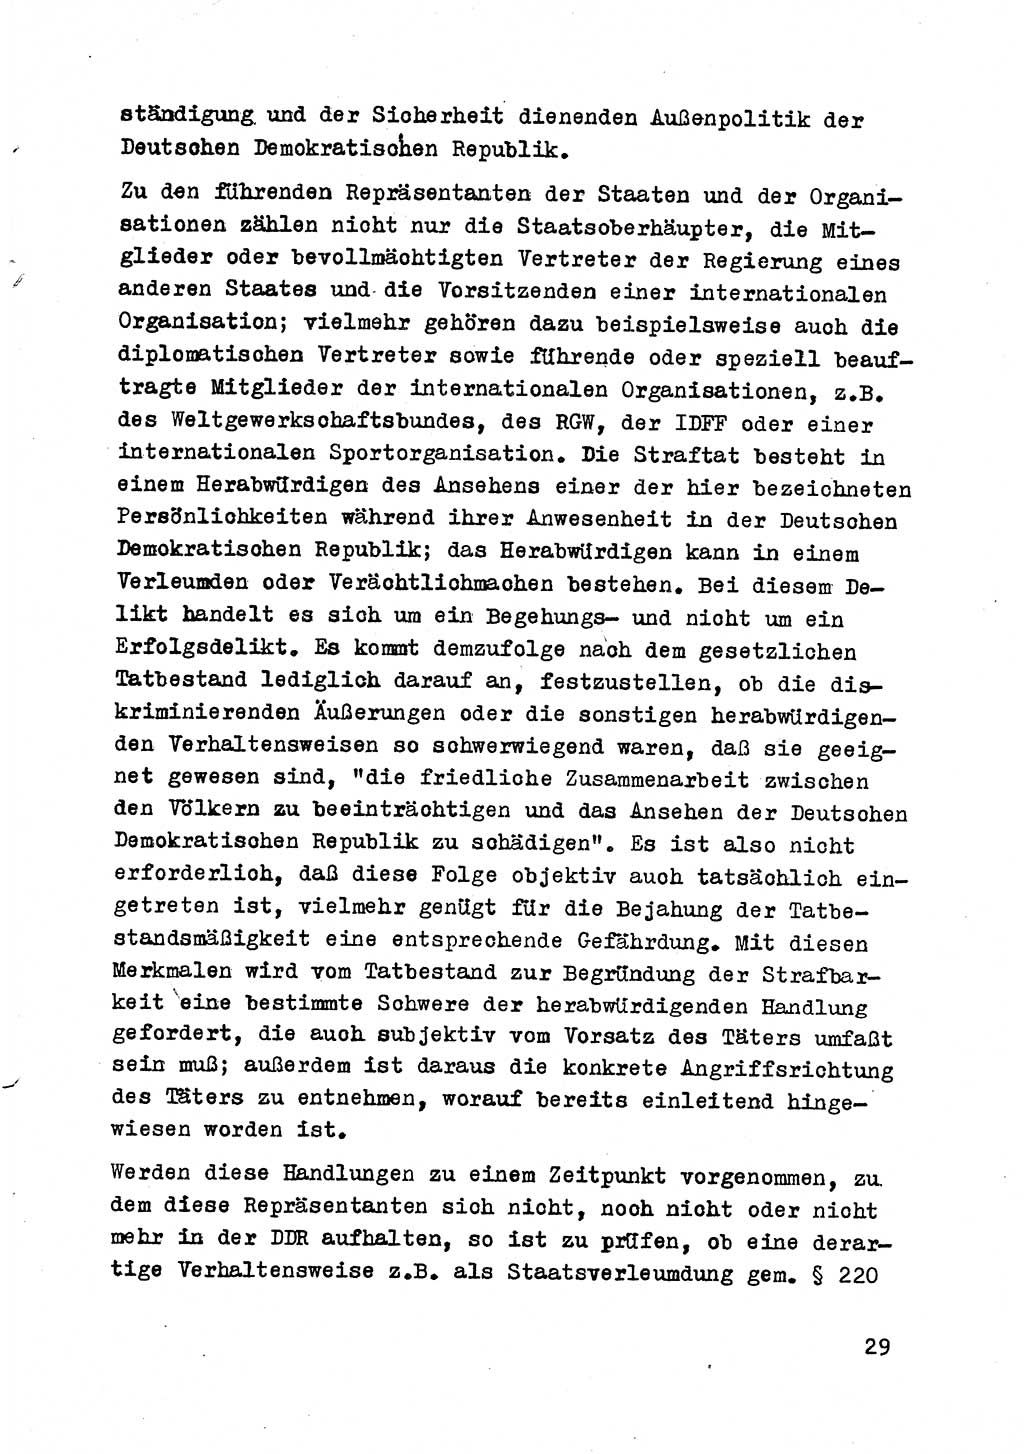 Strafrecht der DDR (Deutsche Demokratische Republik), Besonderer Teil, Lehrmaterial, Heft 8 1970, Seite 29 (Strafr. DDR BT Lehrmat. H. 8 1970, S. 29)